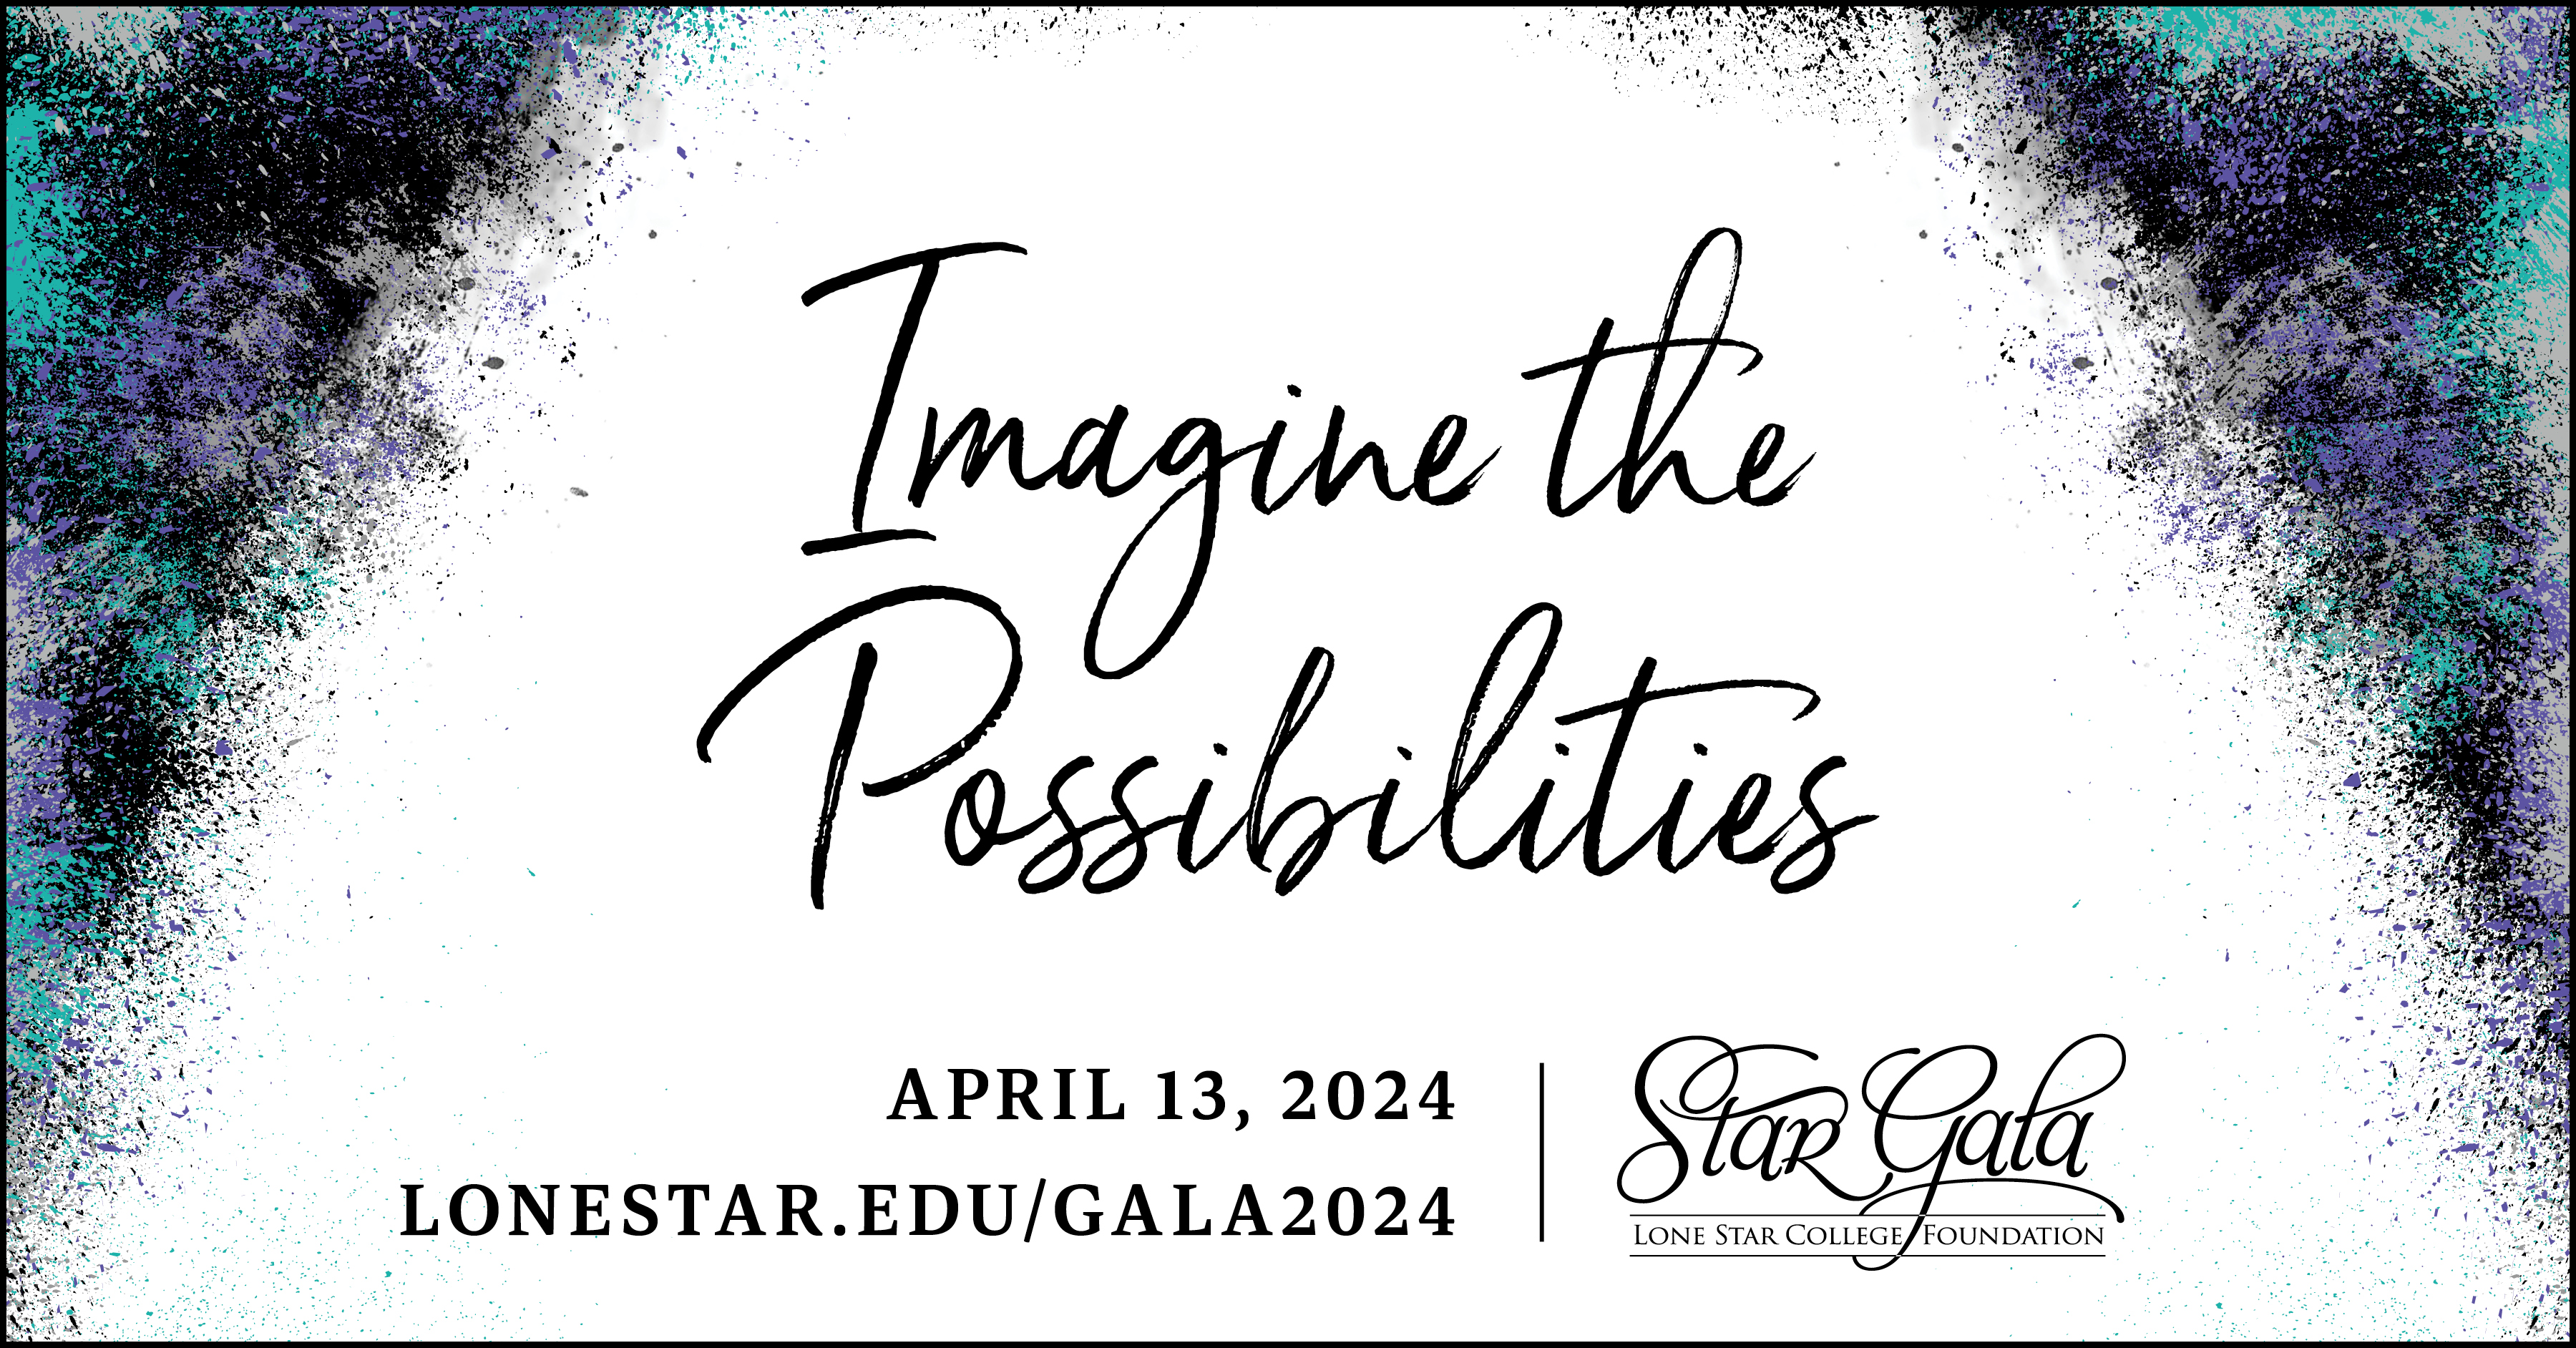 StarGala invitation logo "Imagine the Possibilities"